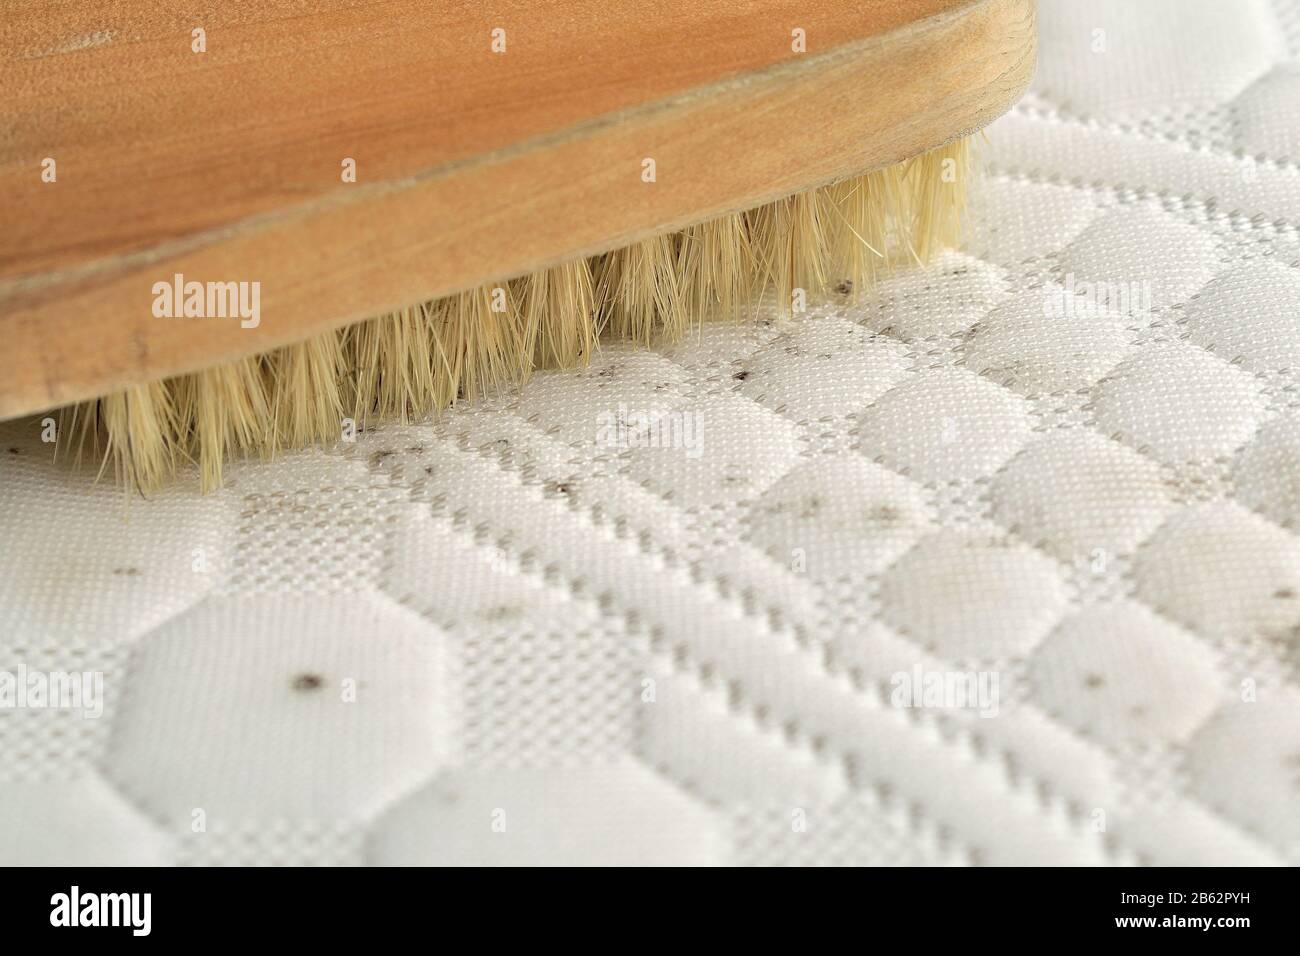 Nettoyage des taches de moisissure sur le matelas Photo Stock - Alamy